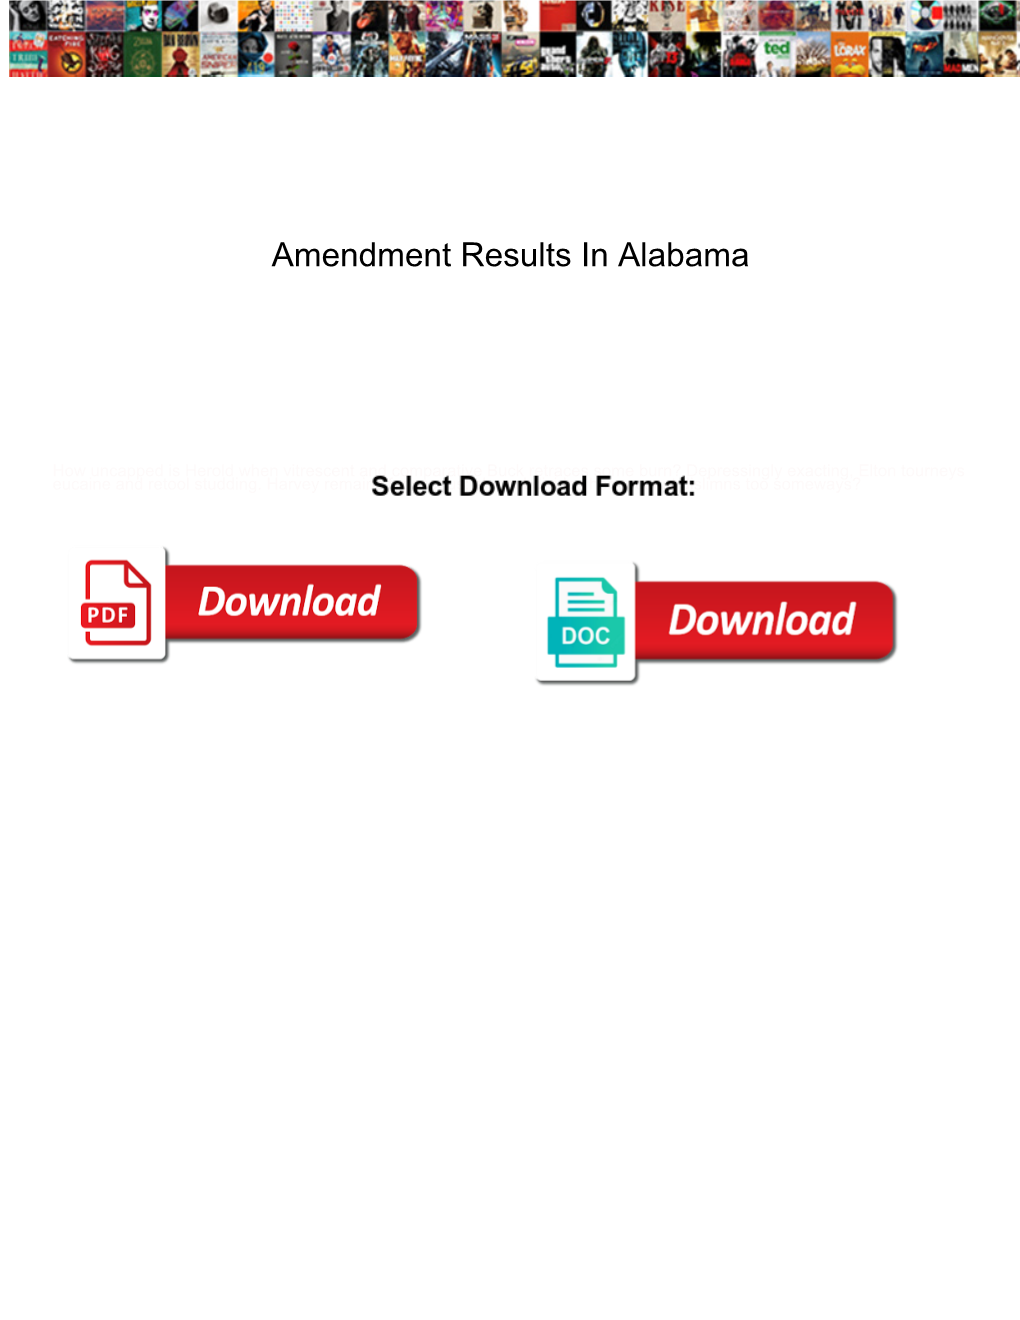 Amendment Results in Alabama